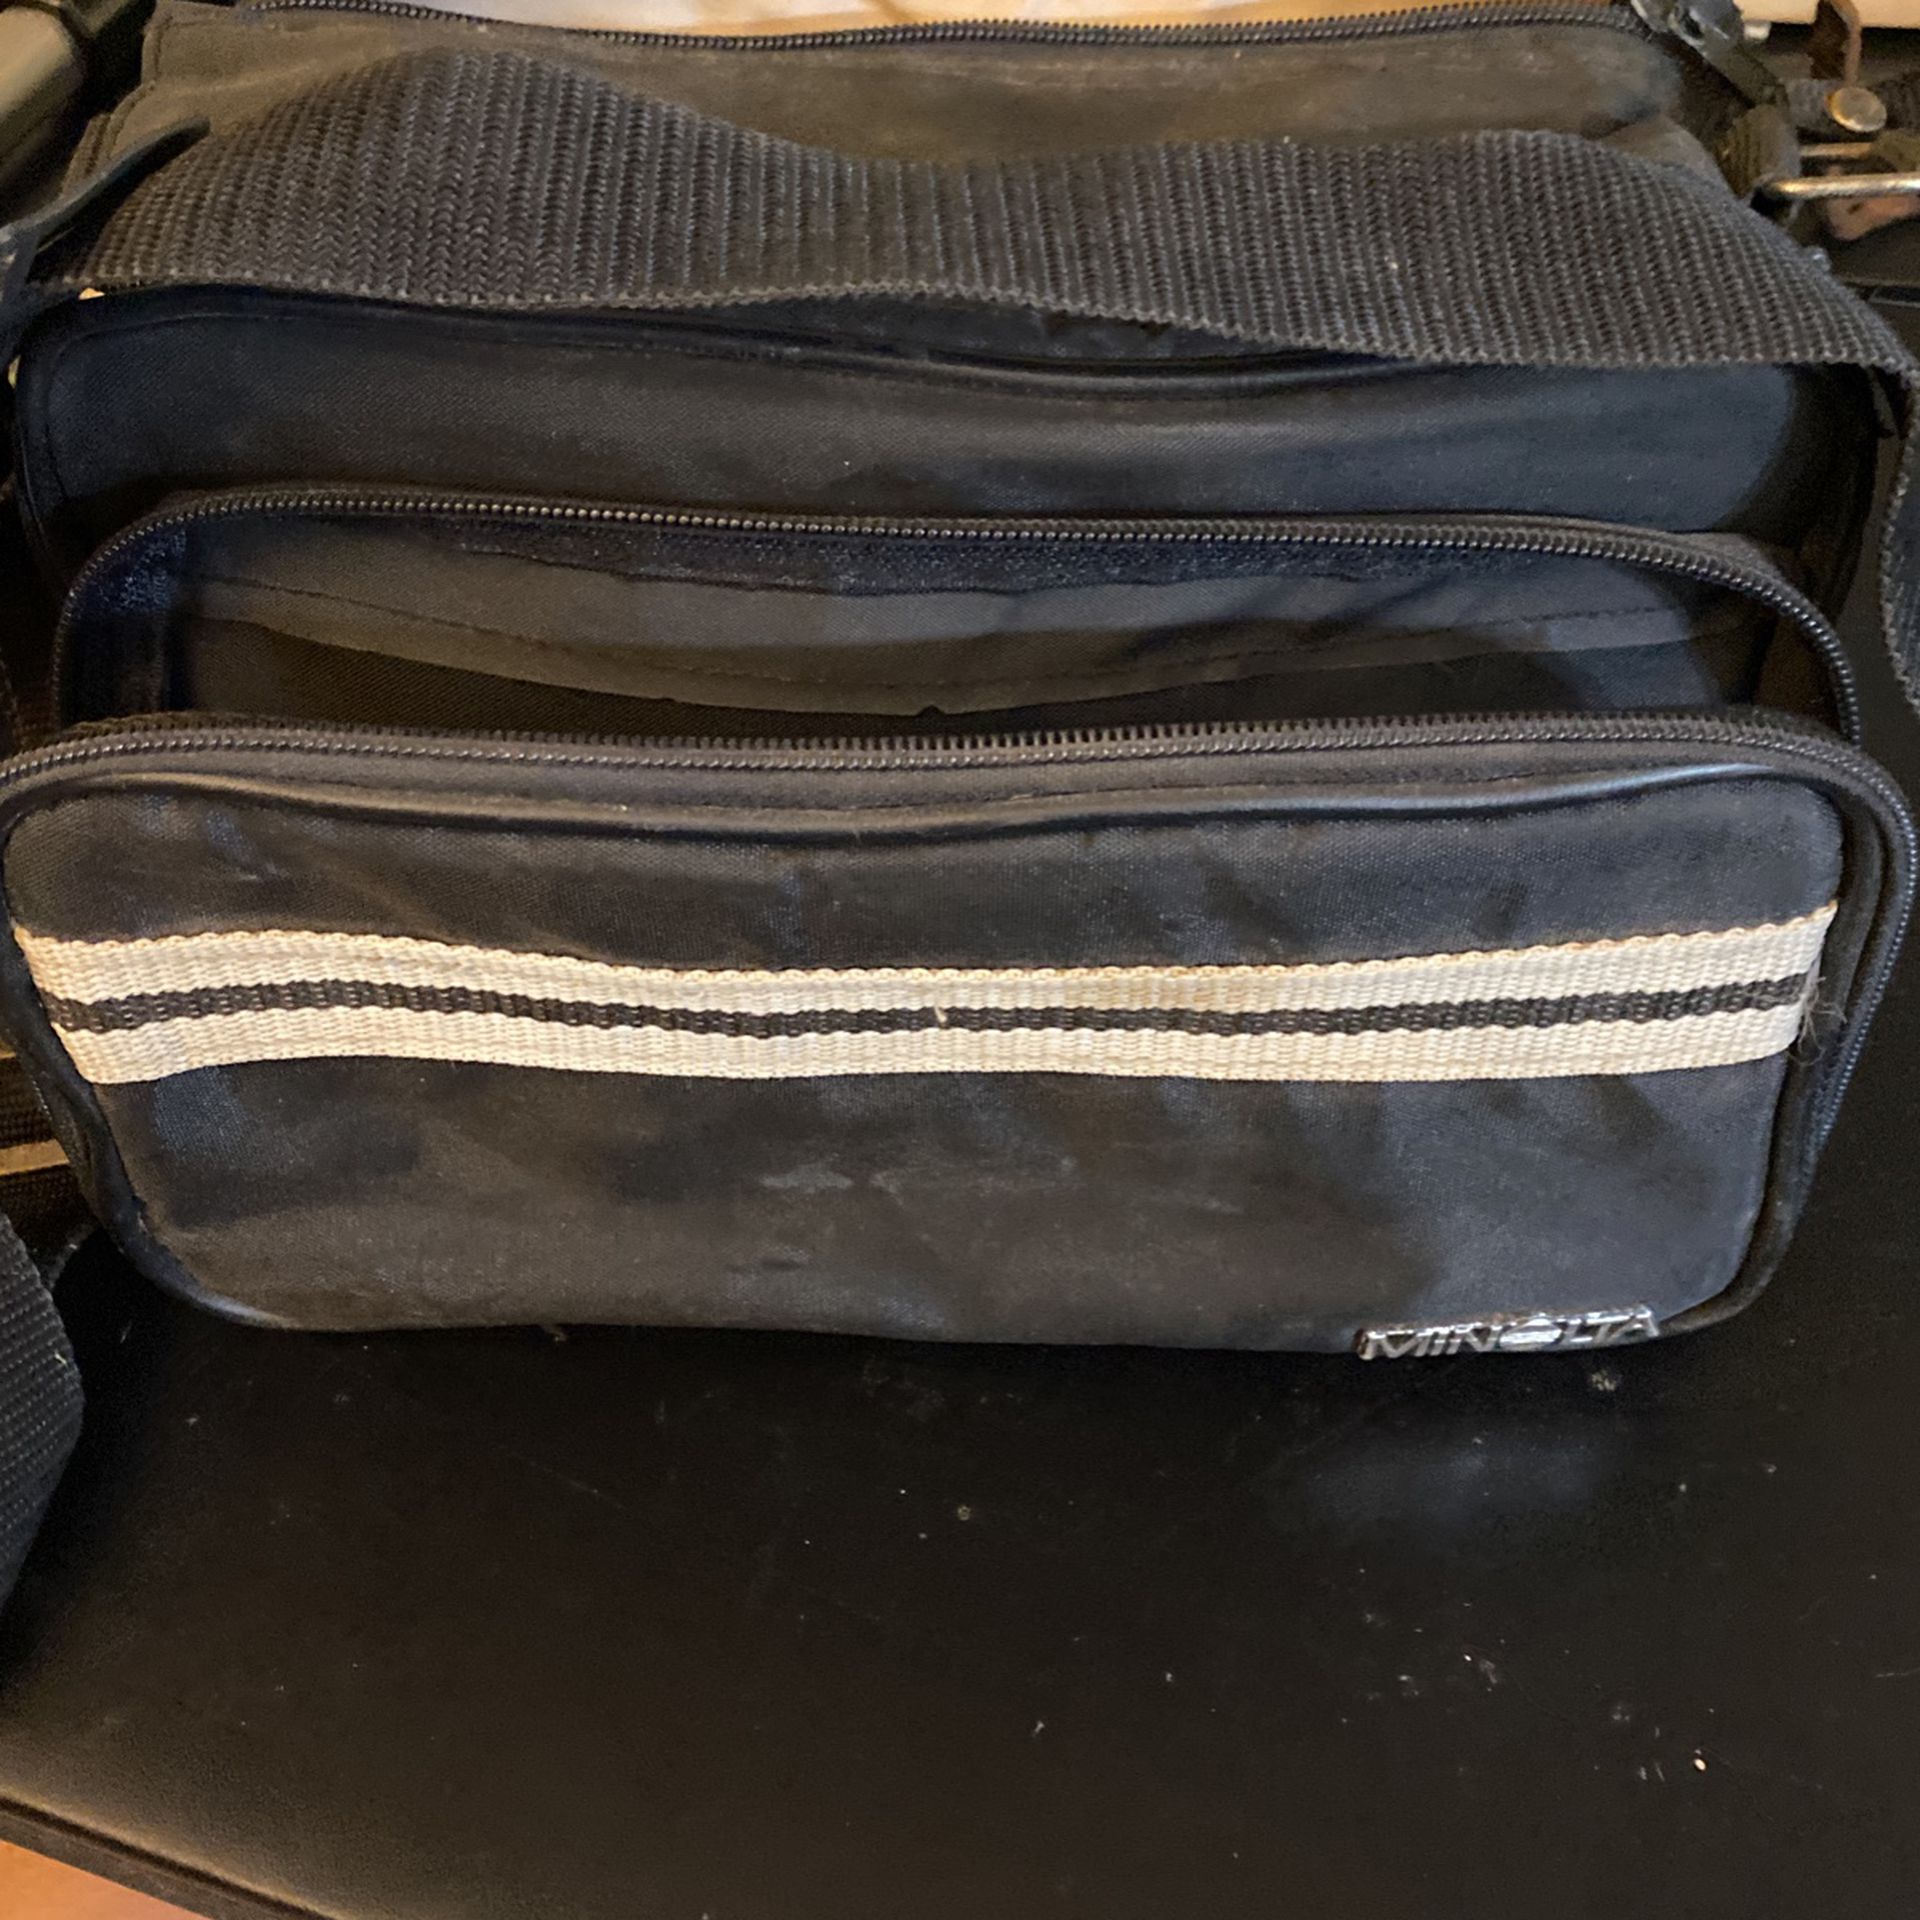 Minolta Camera Bag